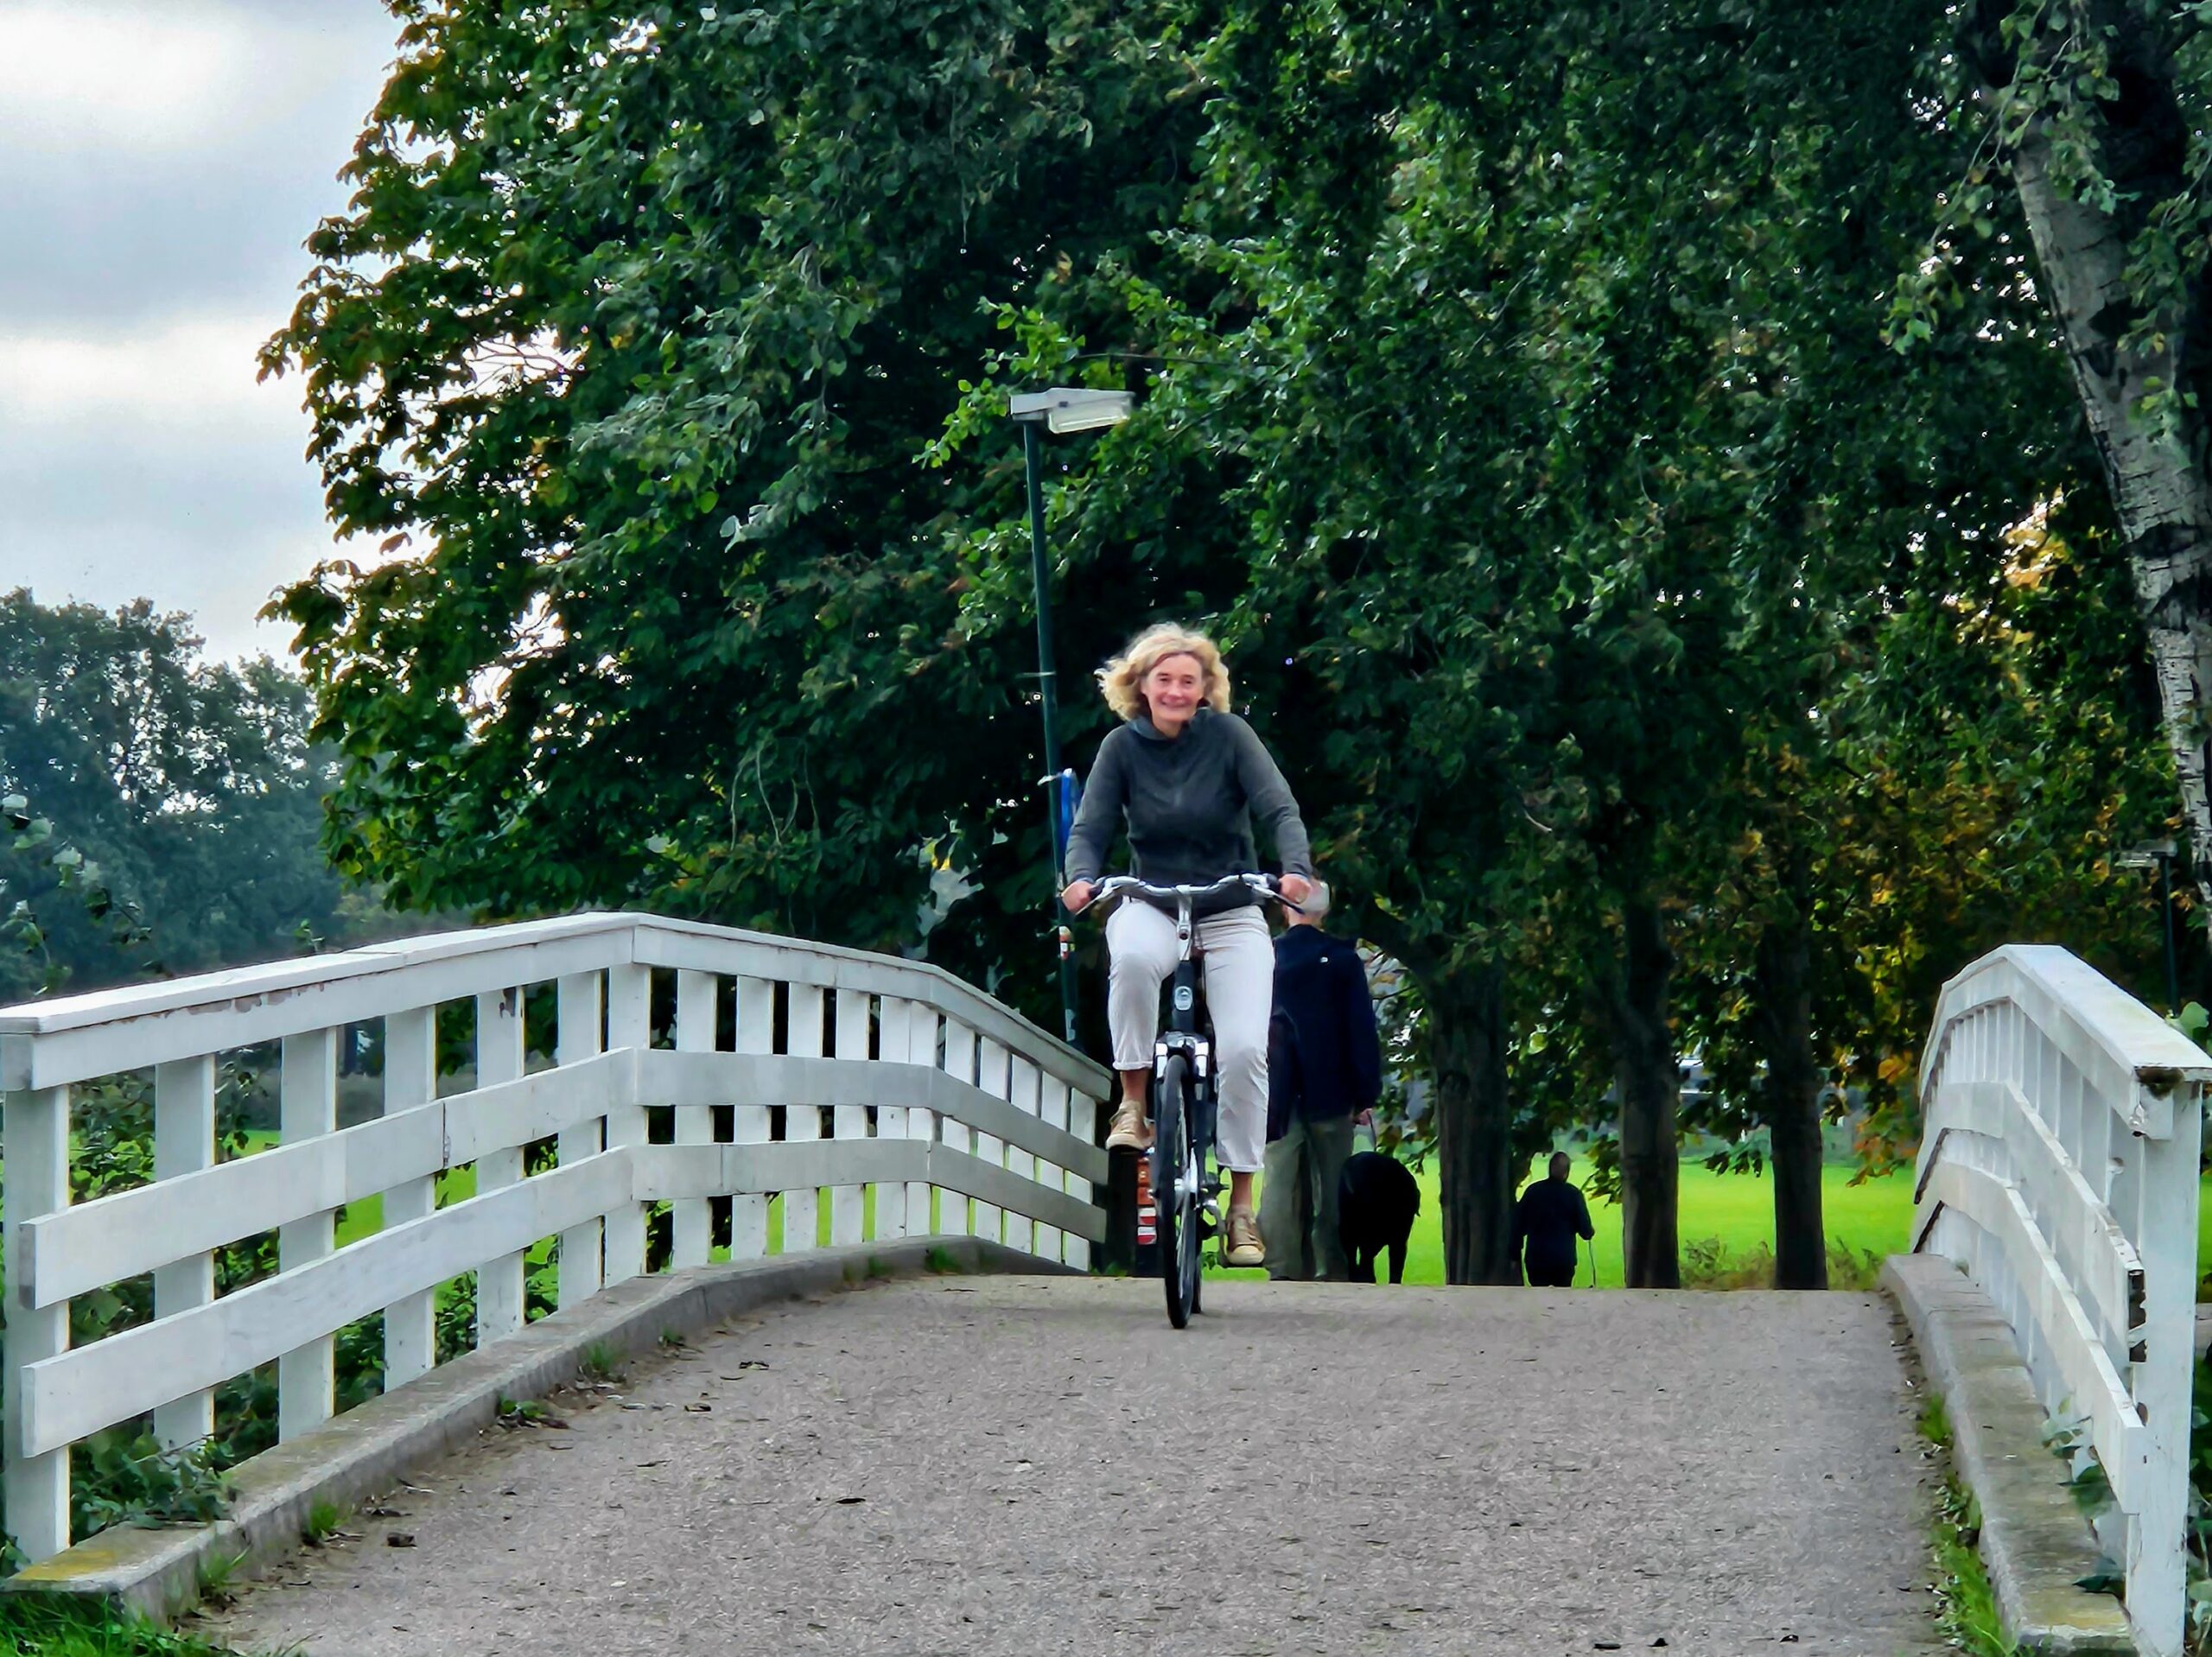 Lidwien op de fiets in Wilhelminapark.